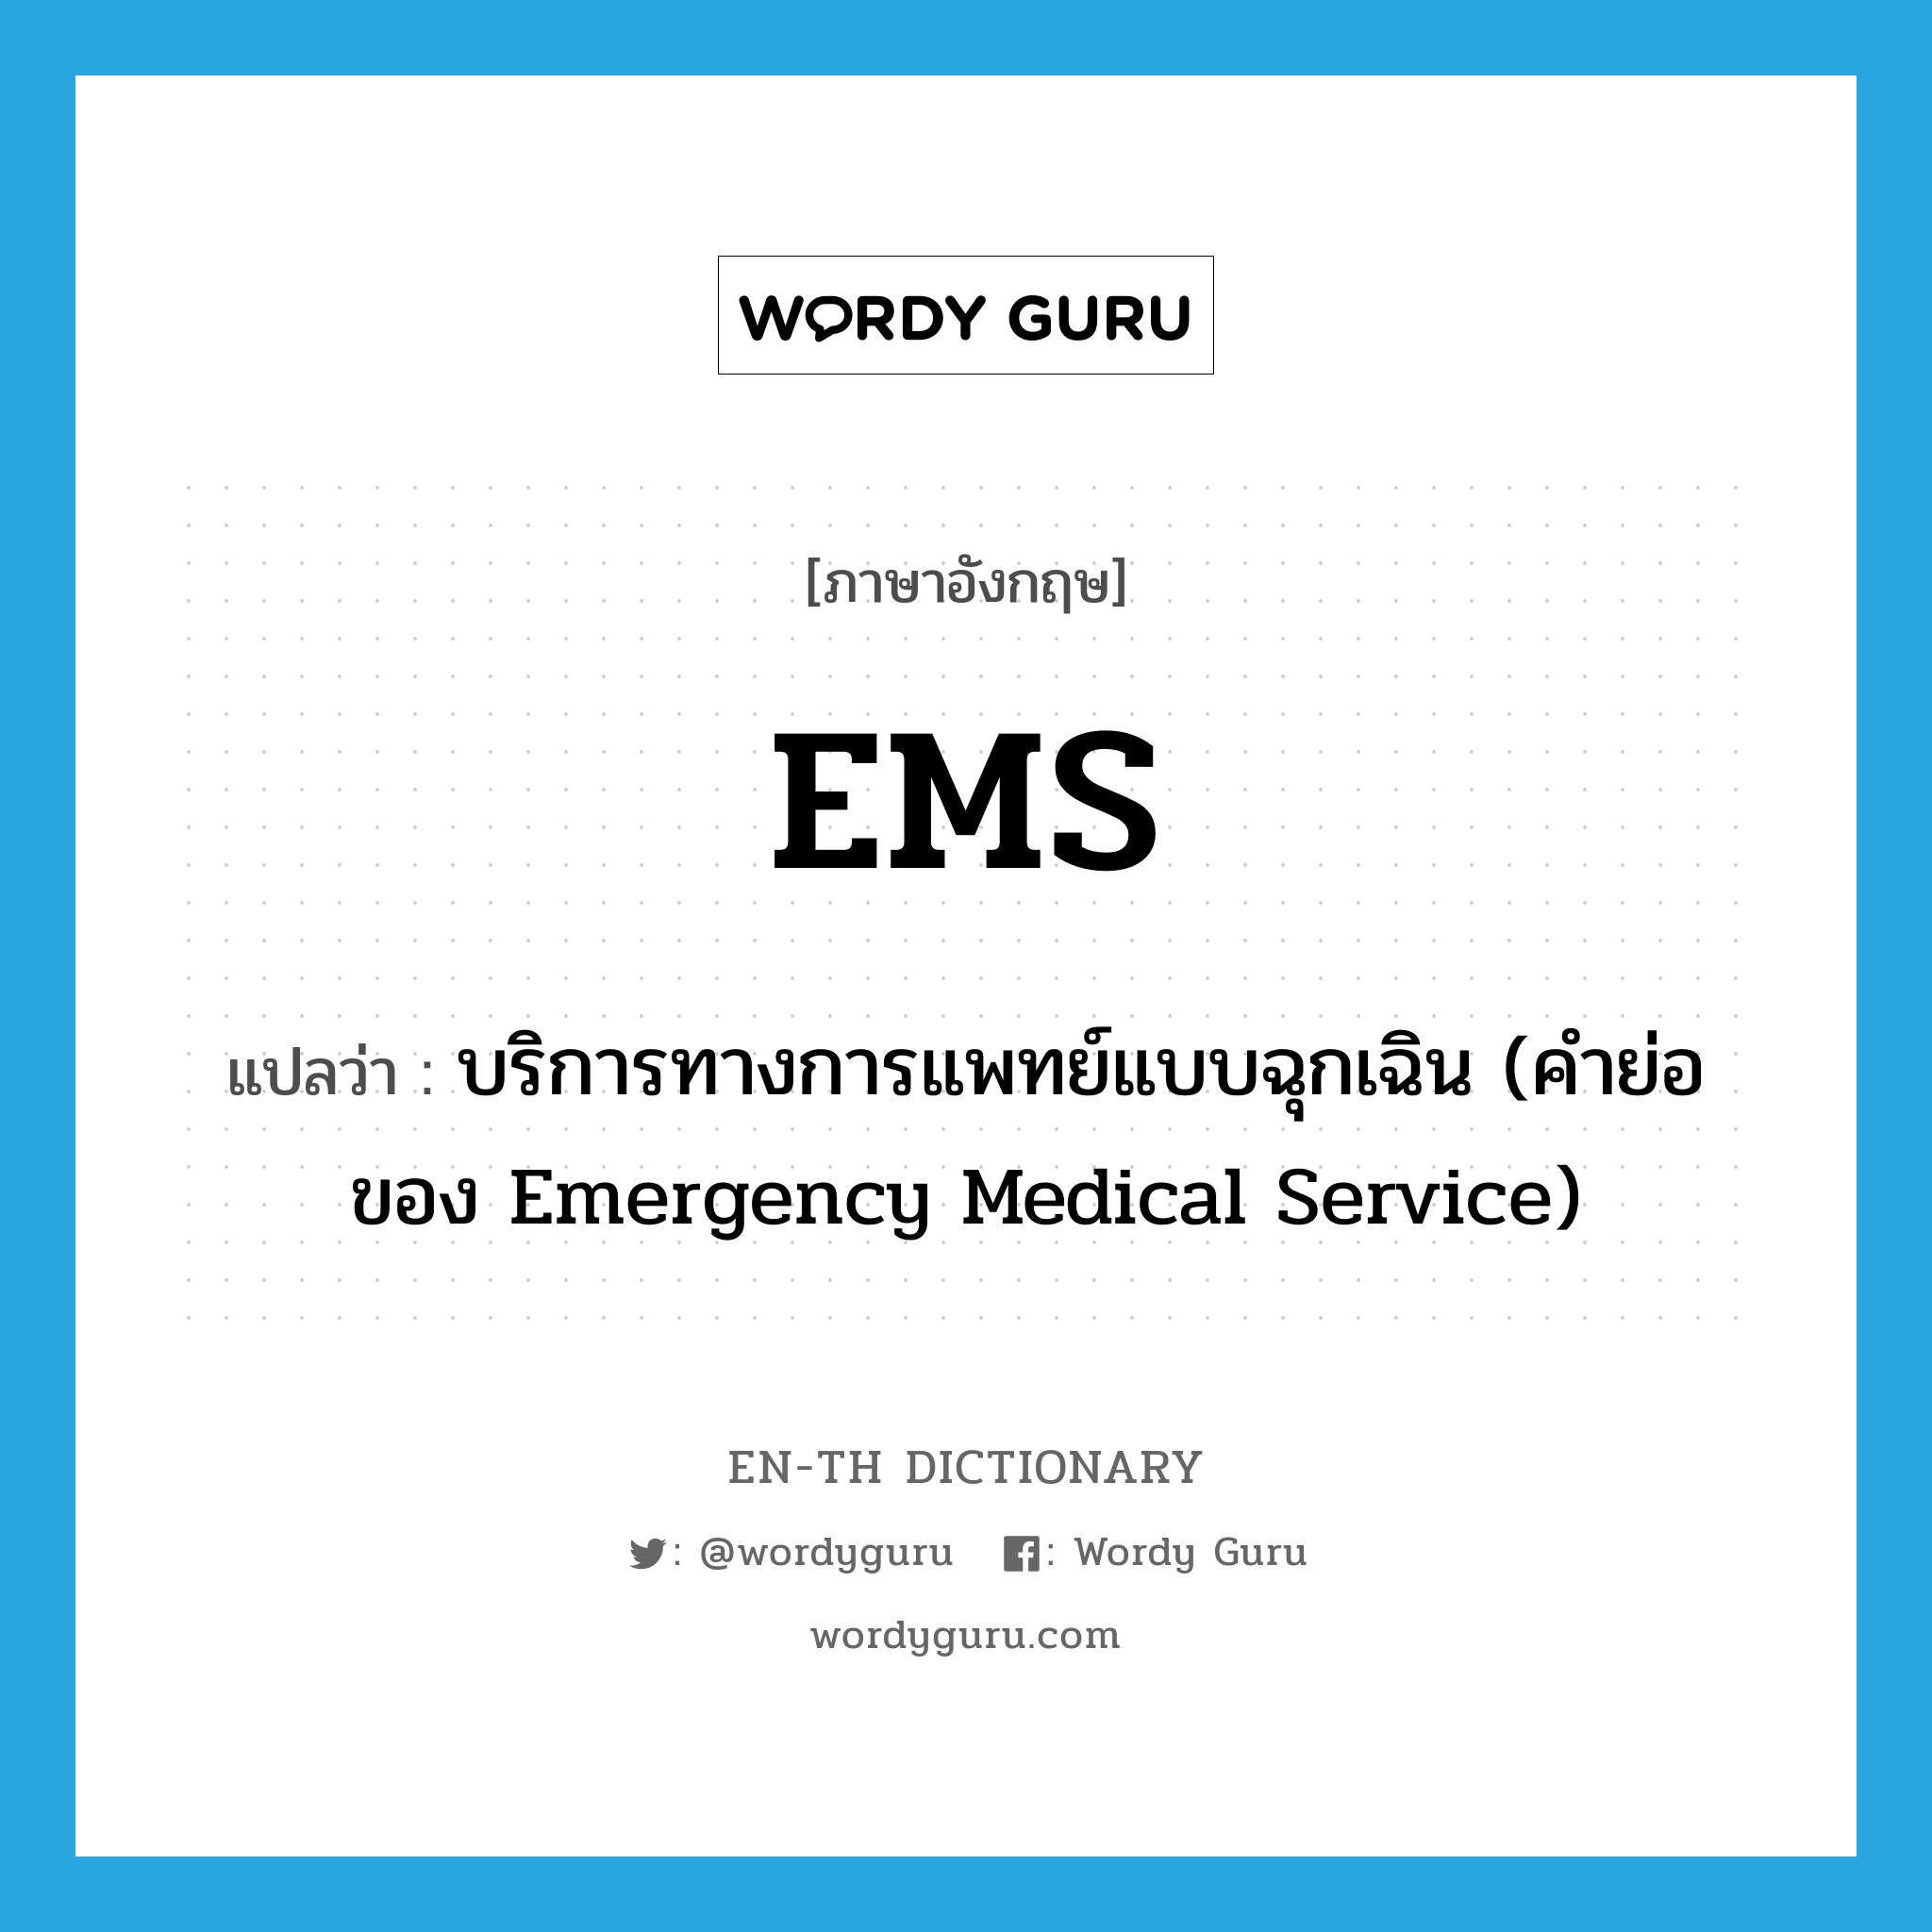 บริการทางการแพทย์แบบฉุกเฉิน (คำย่อของ Emergency Medical Service) ภาษาอังกฤษ?, คำศัพท์ภาษาอังกฤษ บริการทางการแพทย์แบบฉุกเฉิน (คำย่อของ Emergency Medical Service) แปลว่า EMS ประเภท ABBR หมวด ABBR